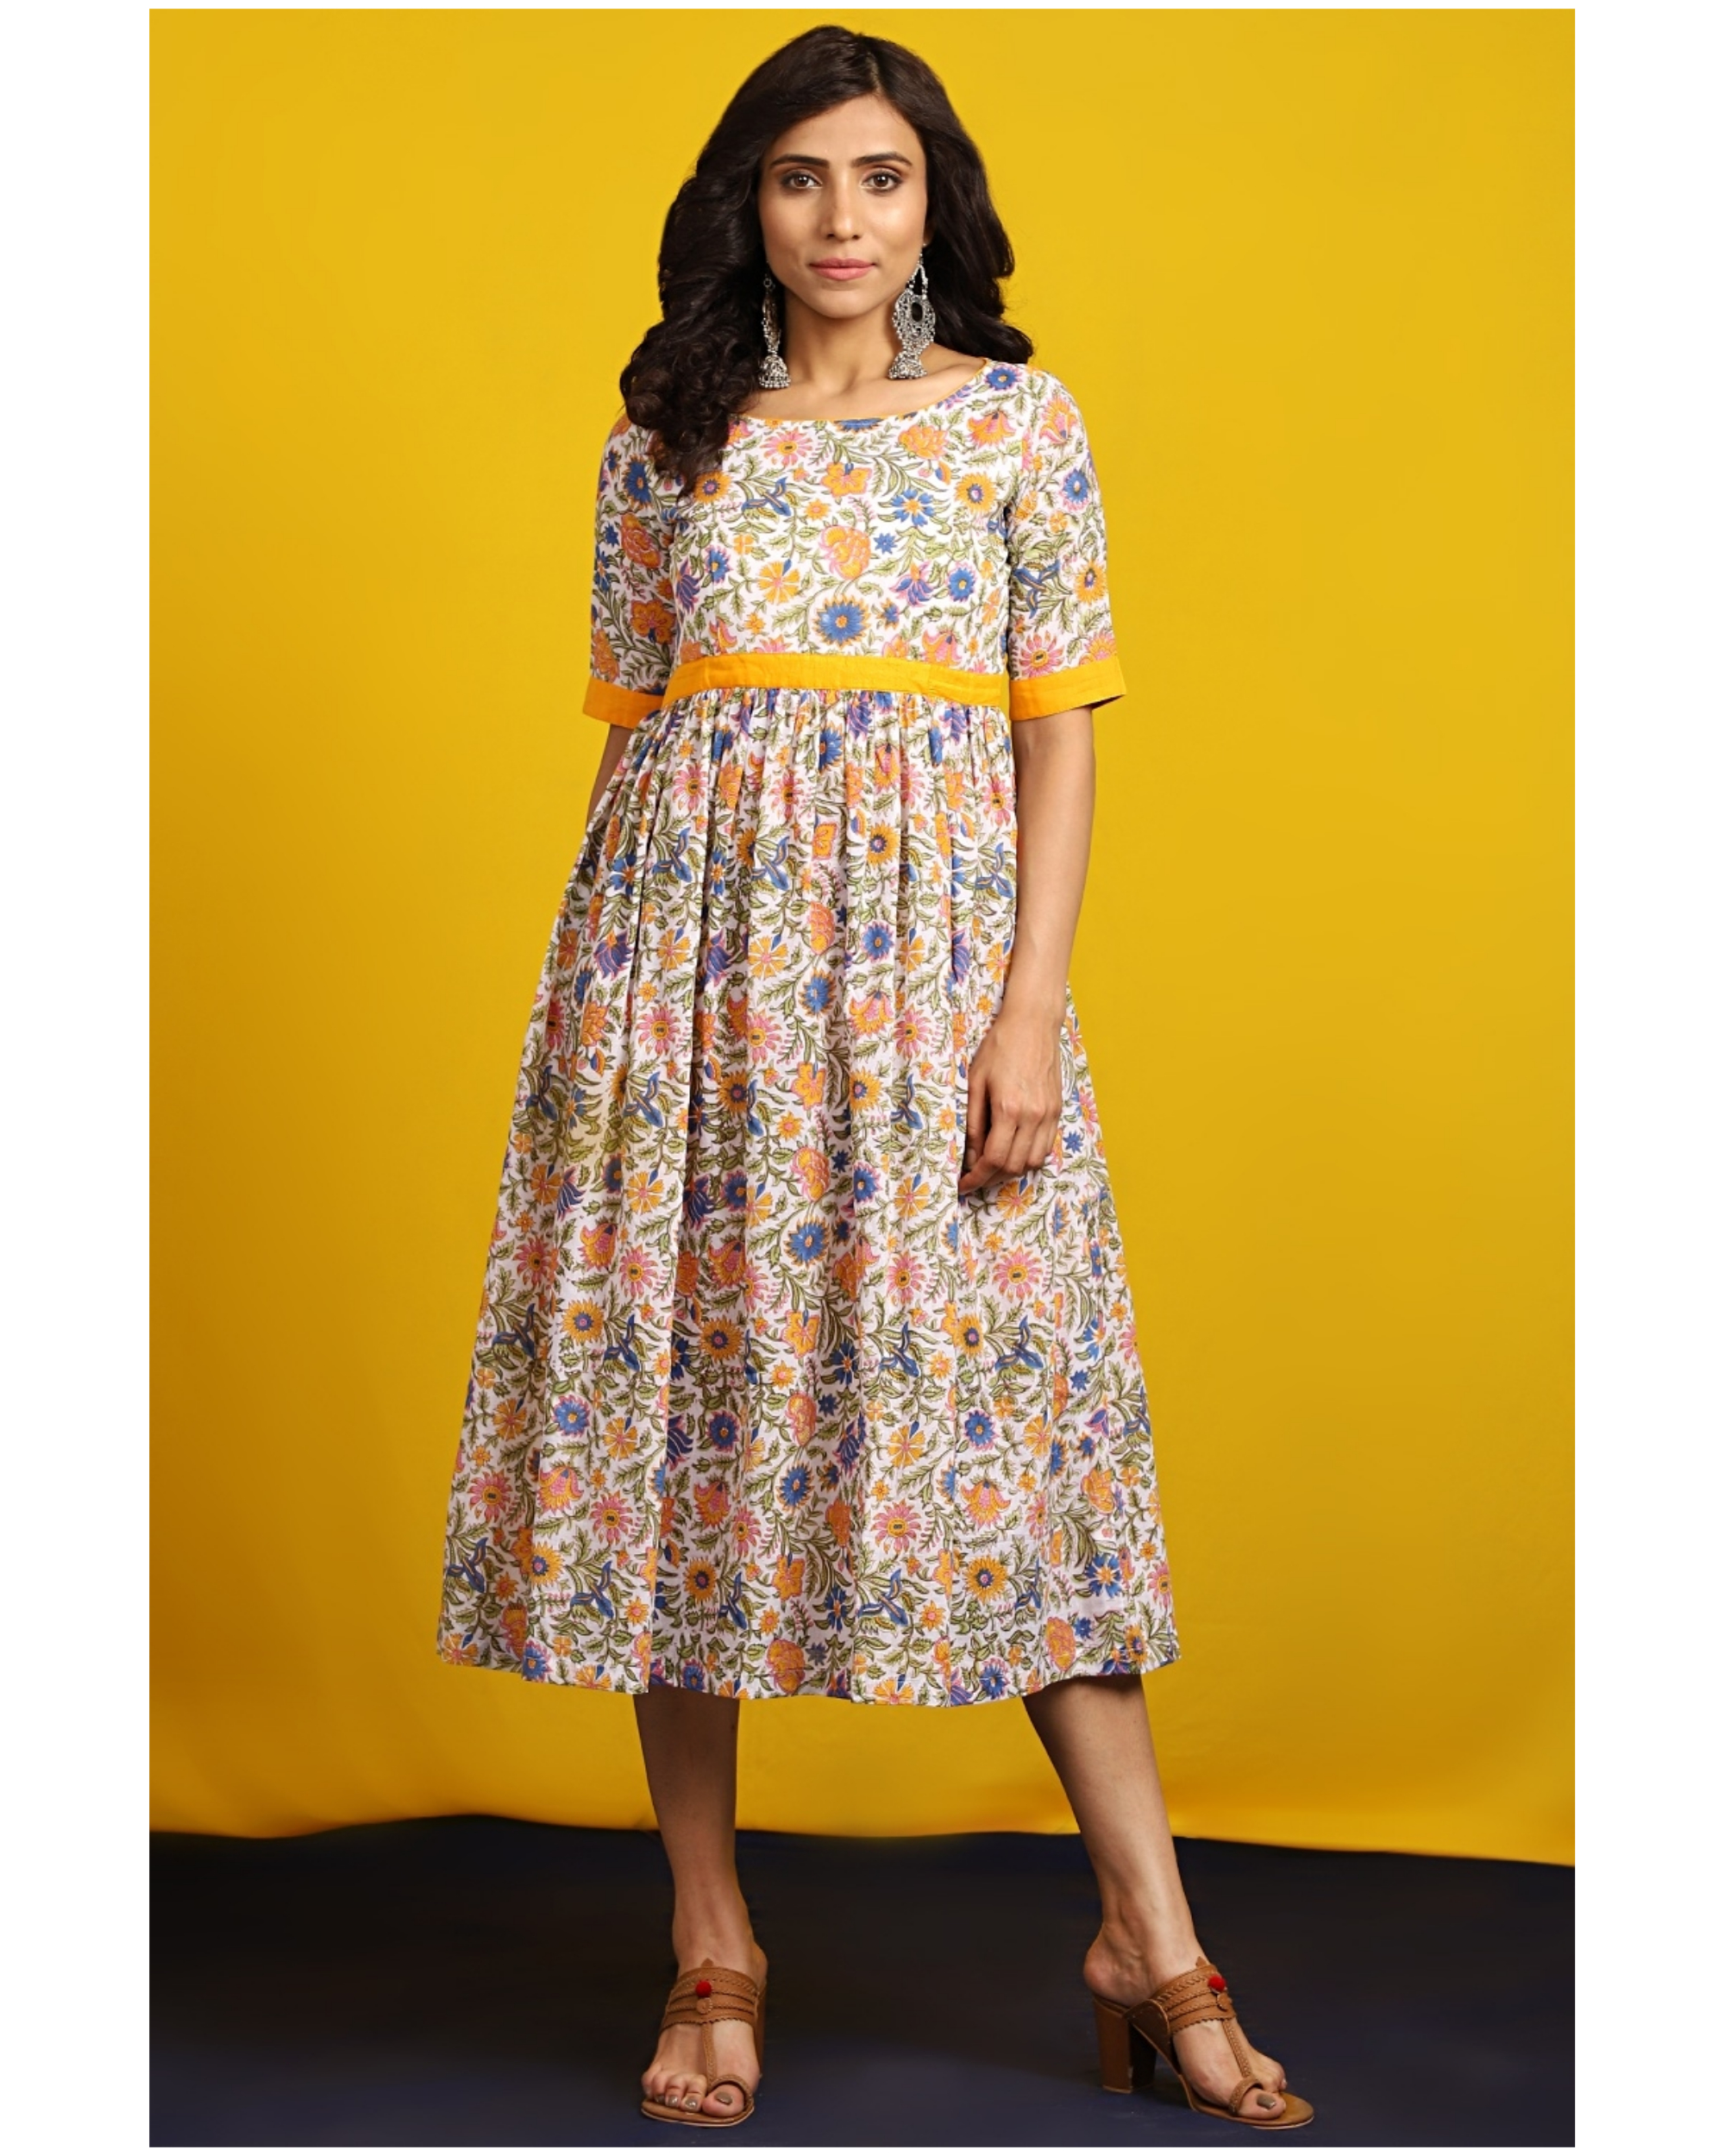 Saffron floral printed midi dress by The Cotton Staple | The Secret Label